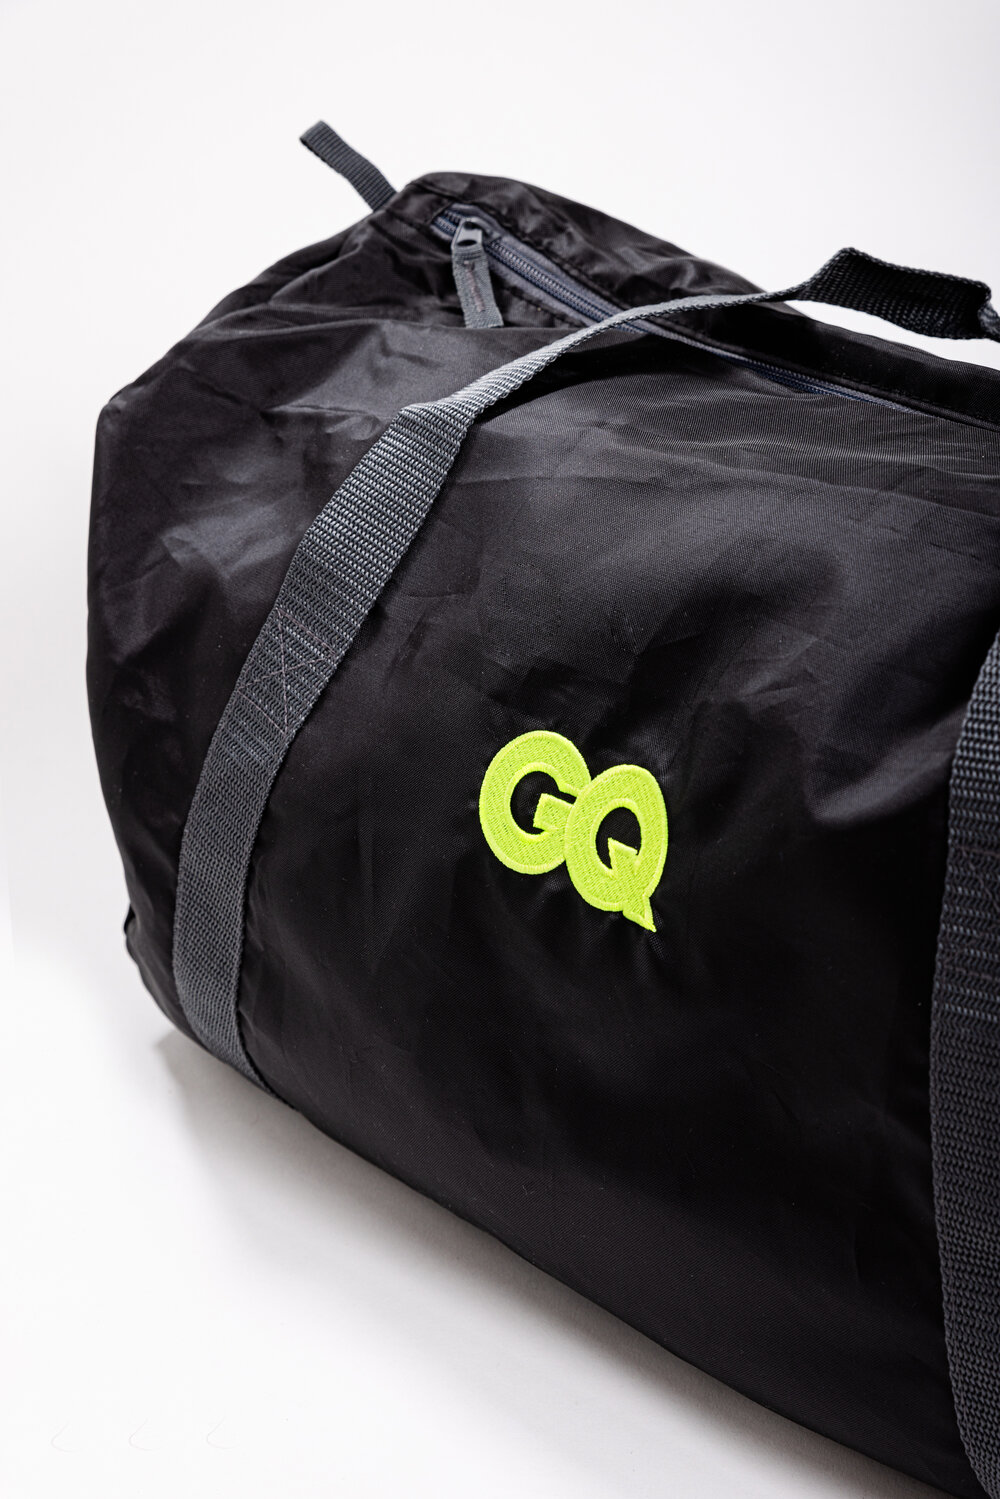 GQ Bag im Special-Deal für Abonnent:innen